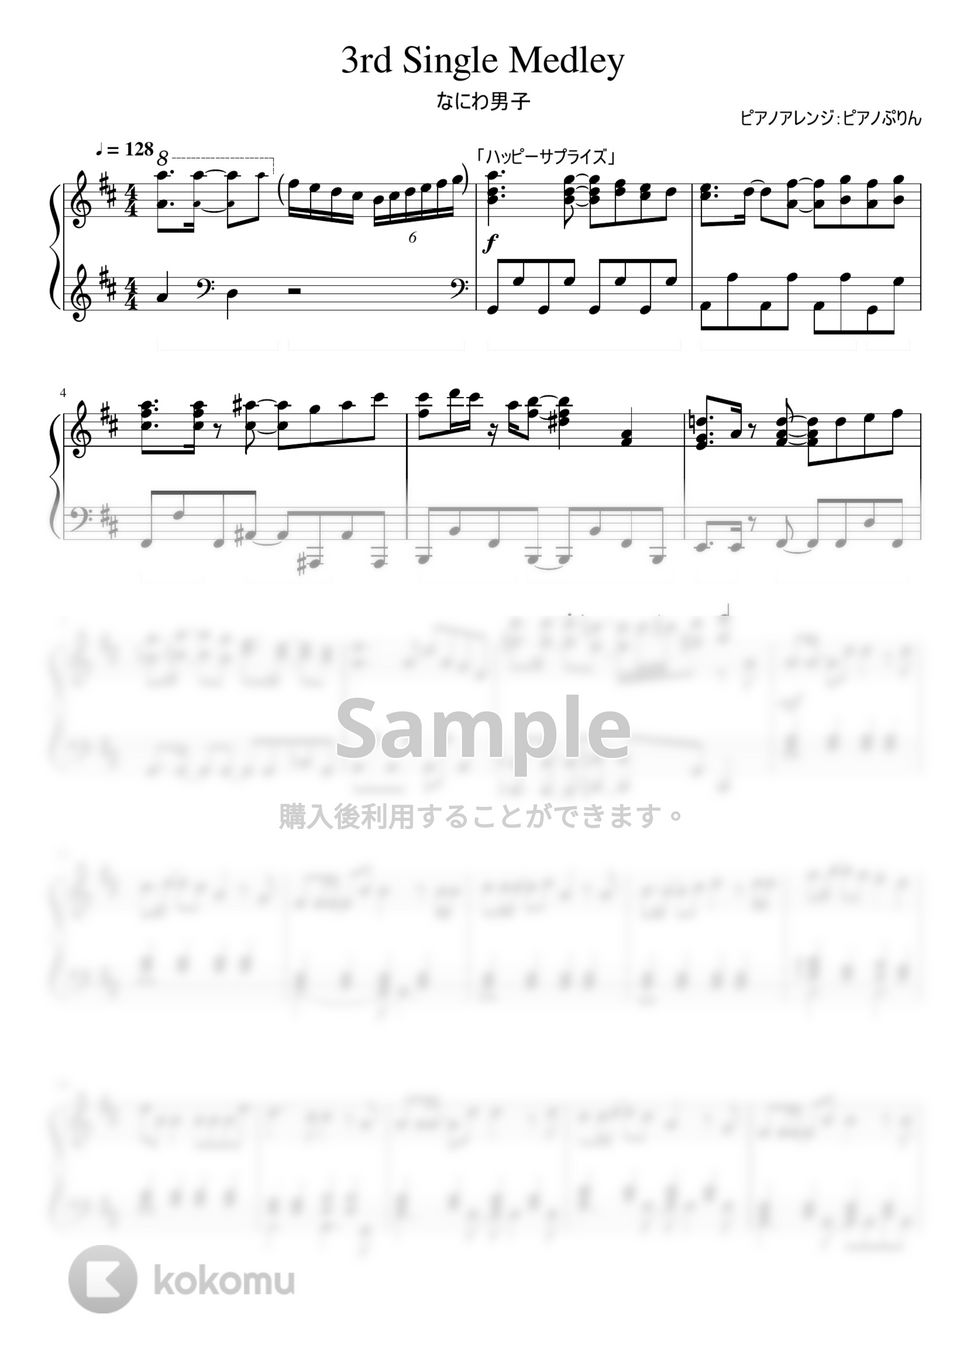 なにわ男子 - なにわ男子3rd Singleメドレー (3rd Single Medley/ハッピーサプライズ　なにわ男子) by ピアノぷりん